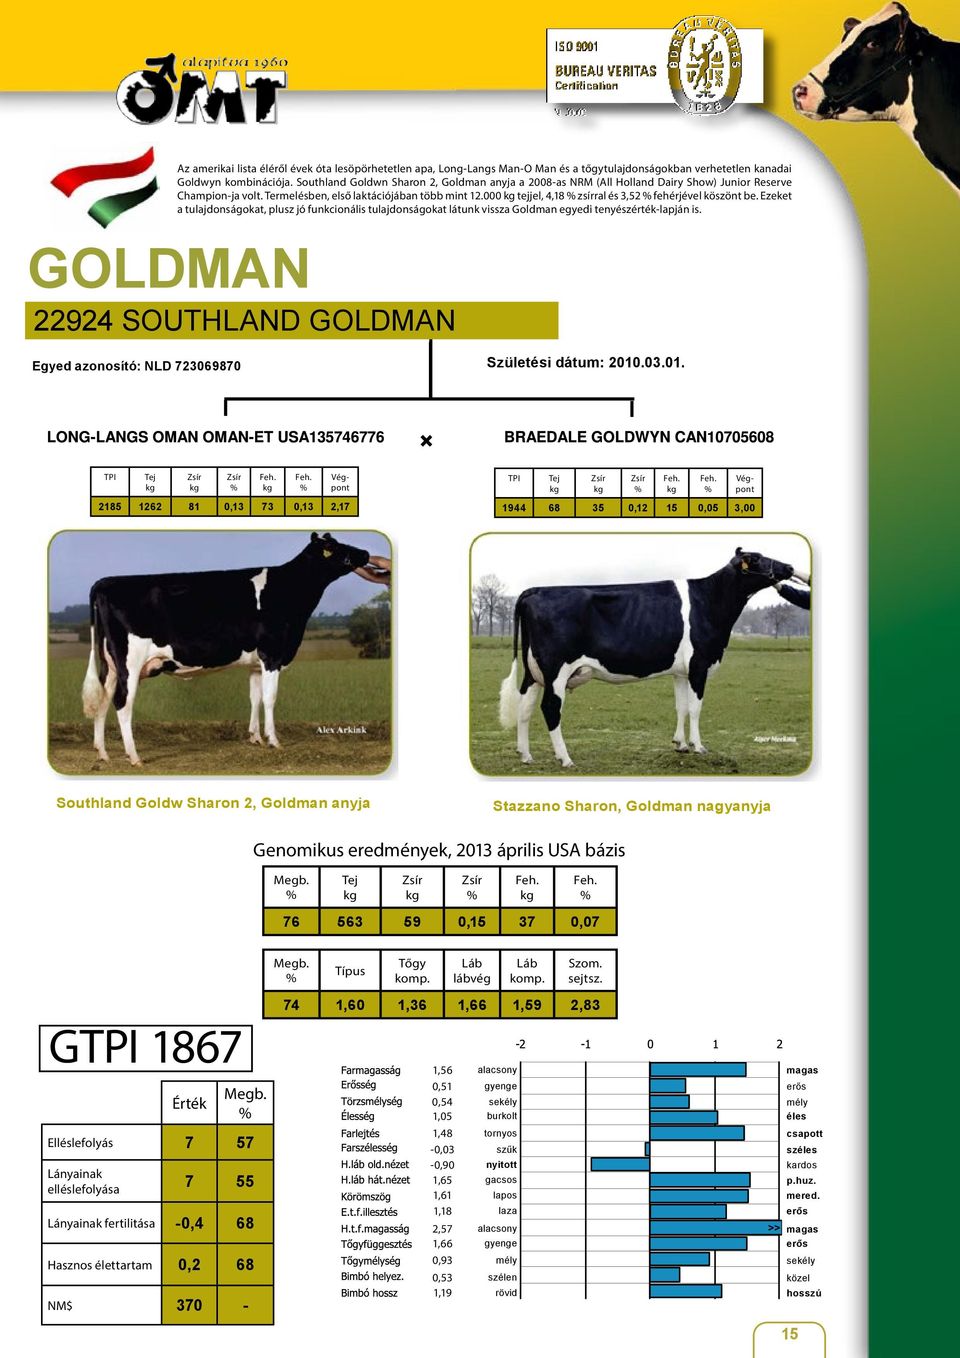 000 tejjel, 4,18 zsírral és 3,52 fehérjével köszönt be. Ezeket a tulajdonságokat, plusz jó funkcionális tulajdonságokat látunk vissza Goldman egyedi tenyészérték-lapján is.